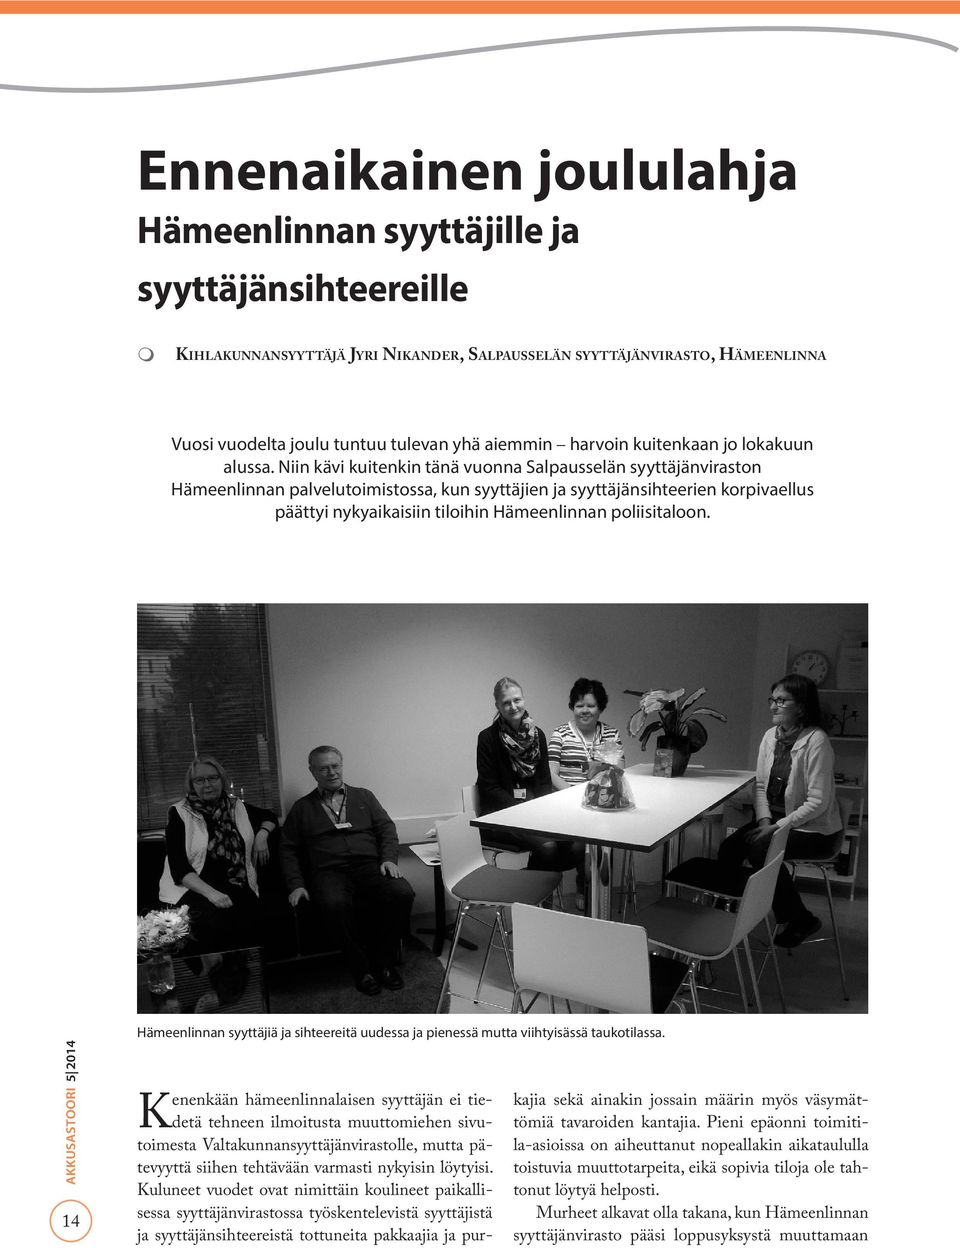 Niin kävi kuitenkin tänä vuonna Salpausselän syyttäjänviraston Hämeenlinnan palvelutoimistossa, kun syyttäjien ja syyttäjänsihteerien korpivaellus päättyi nykyaikaisiin tiloihin Hämeenlinnan